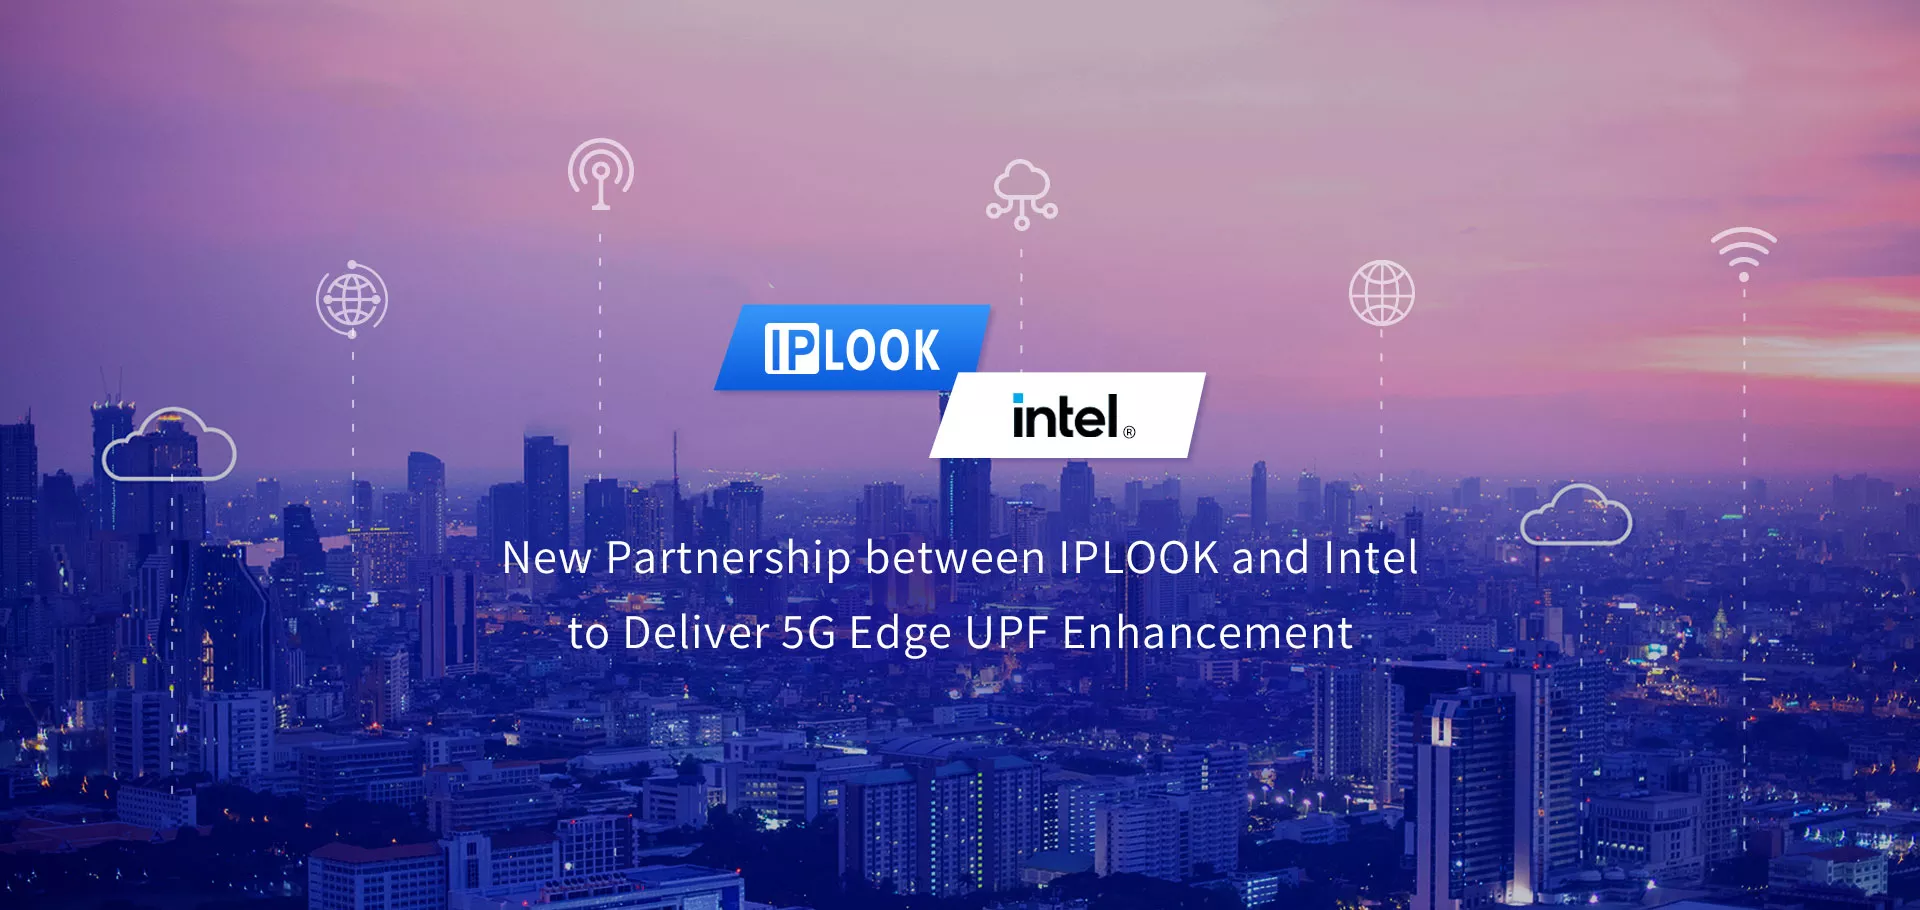 Nueva asociación entre IPLOOK e Intel para ofrecer mejoras UPF en el borde 5G